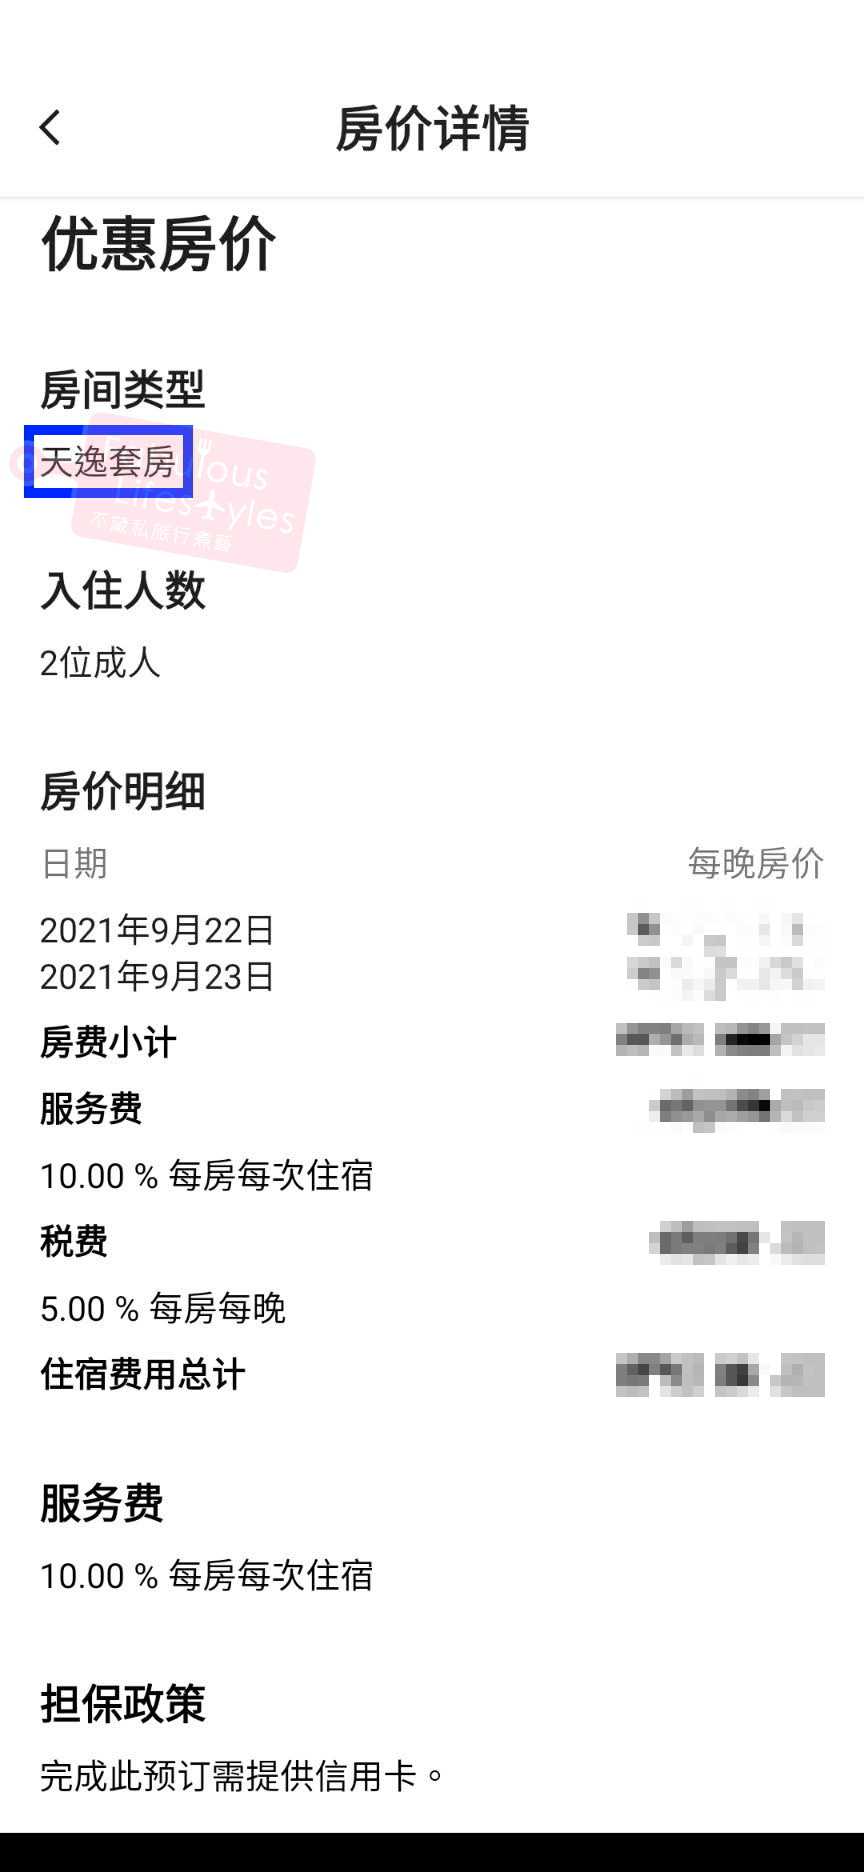 中文版App顯示正確的『天逸套房』